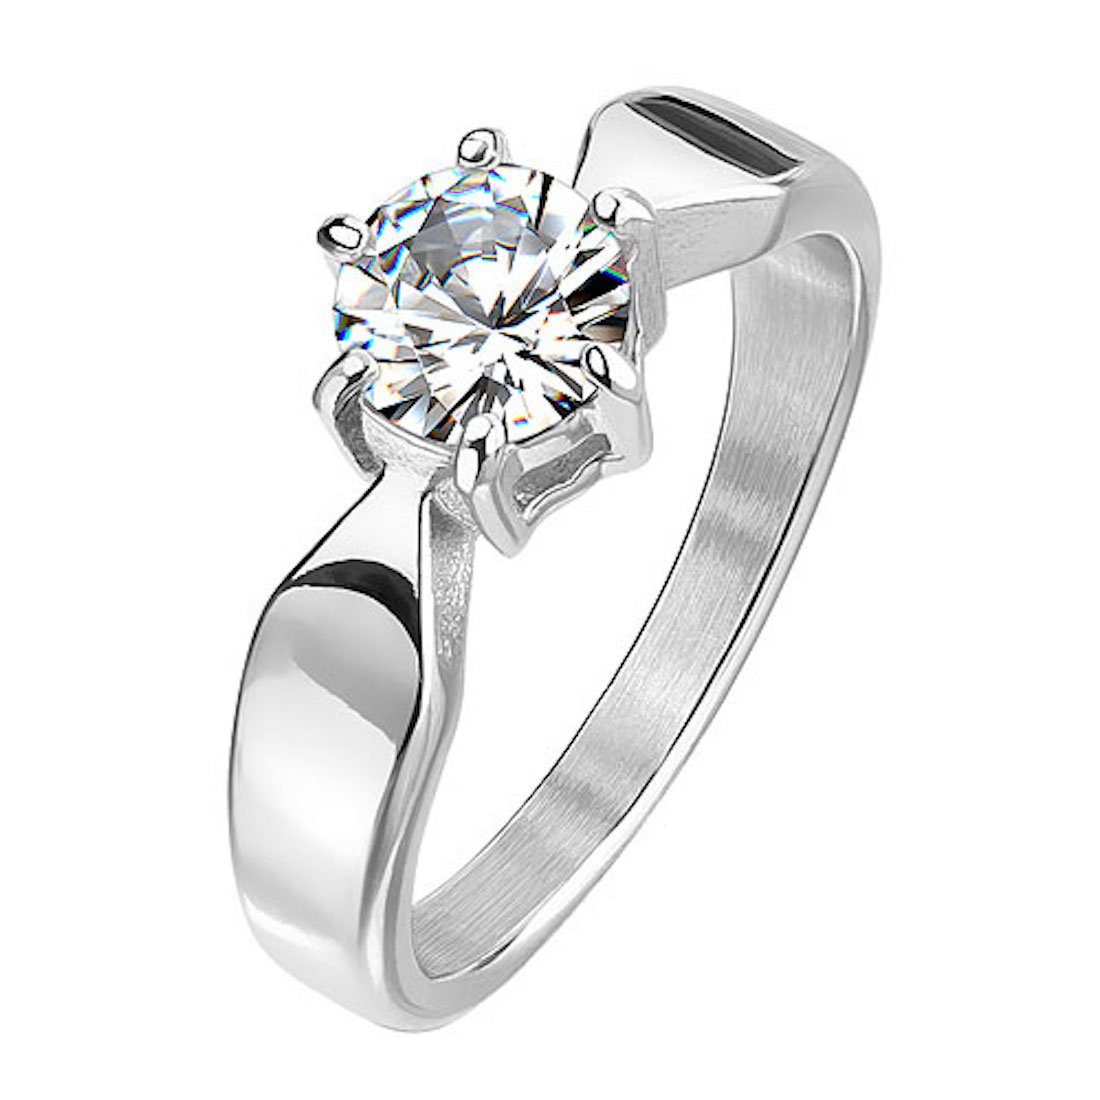 Taffstyle Fingerring Damen Ring Edelstahl mit Zirkonia, Kristall Solitär  Stein Diamant Form Damenring Trauring Verlobungsring